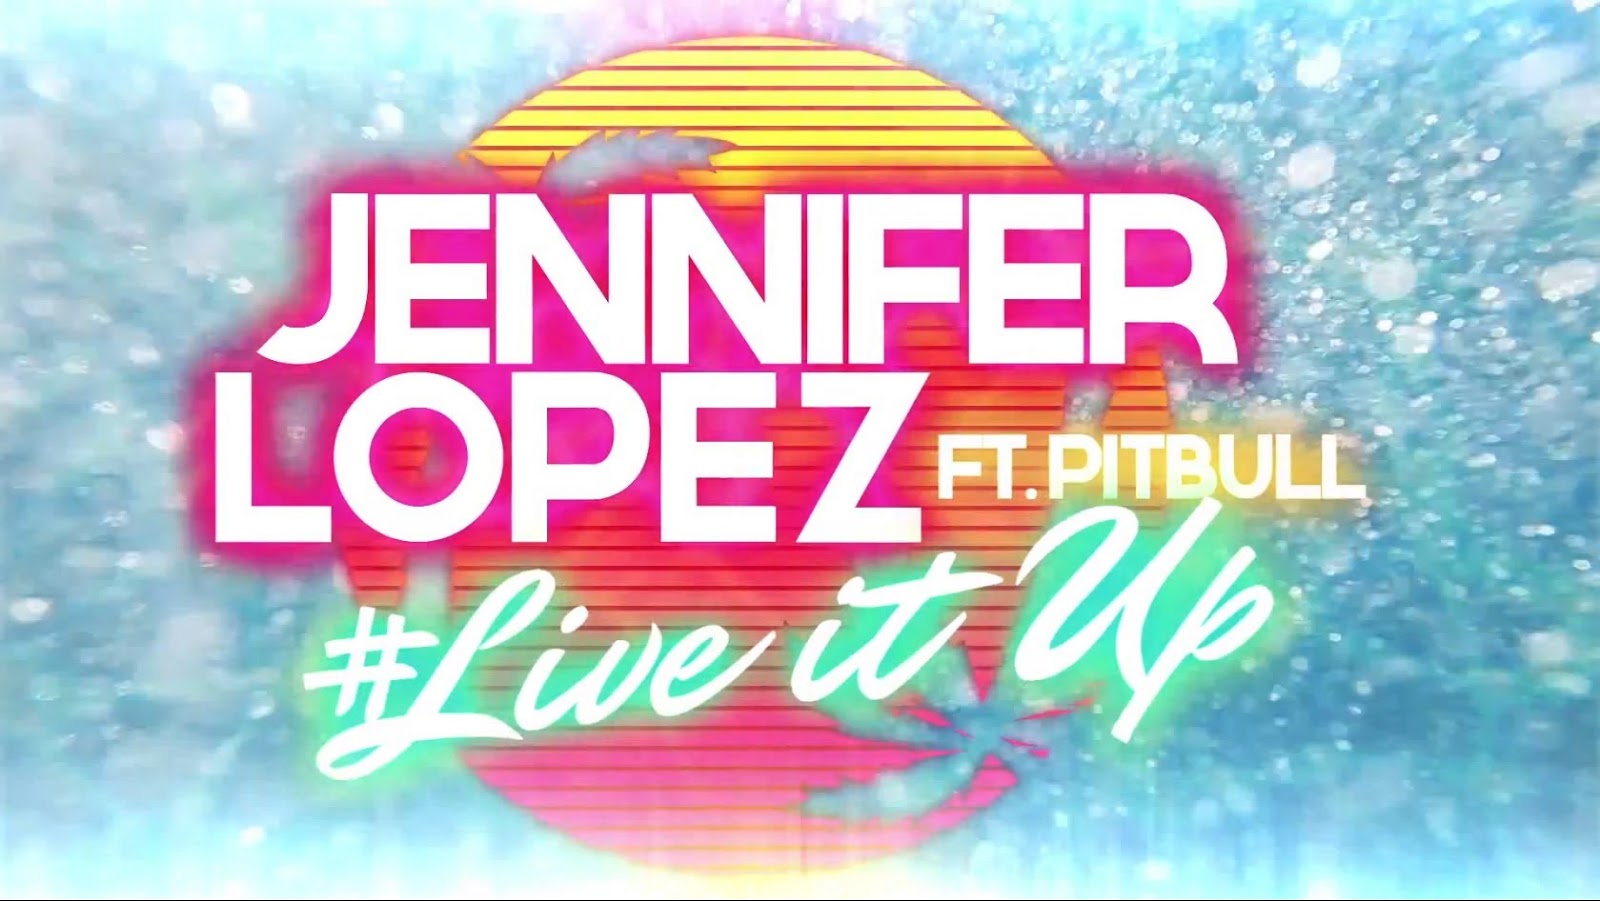 Live it up 2. Jennifer Lopez Live it up ft. Pitbull. Jennifer Lopez - Live it up - 1080p caps.